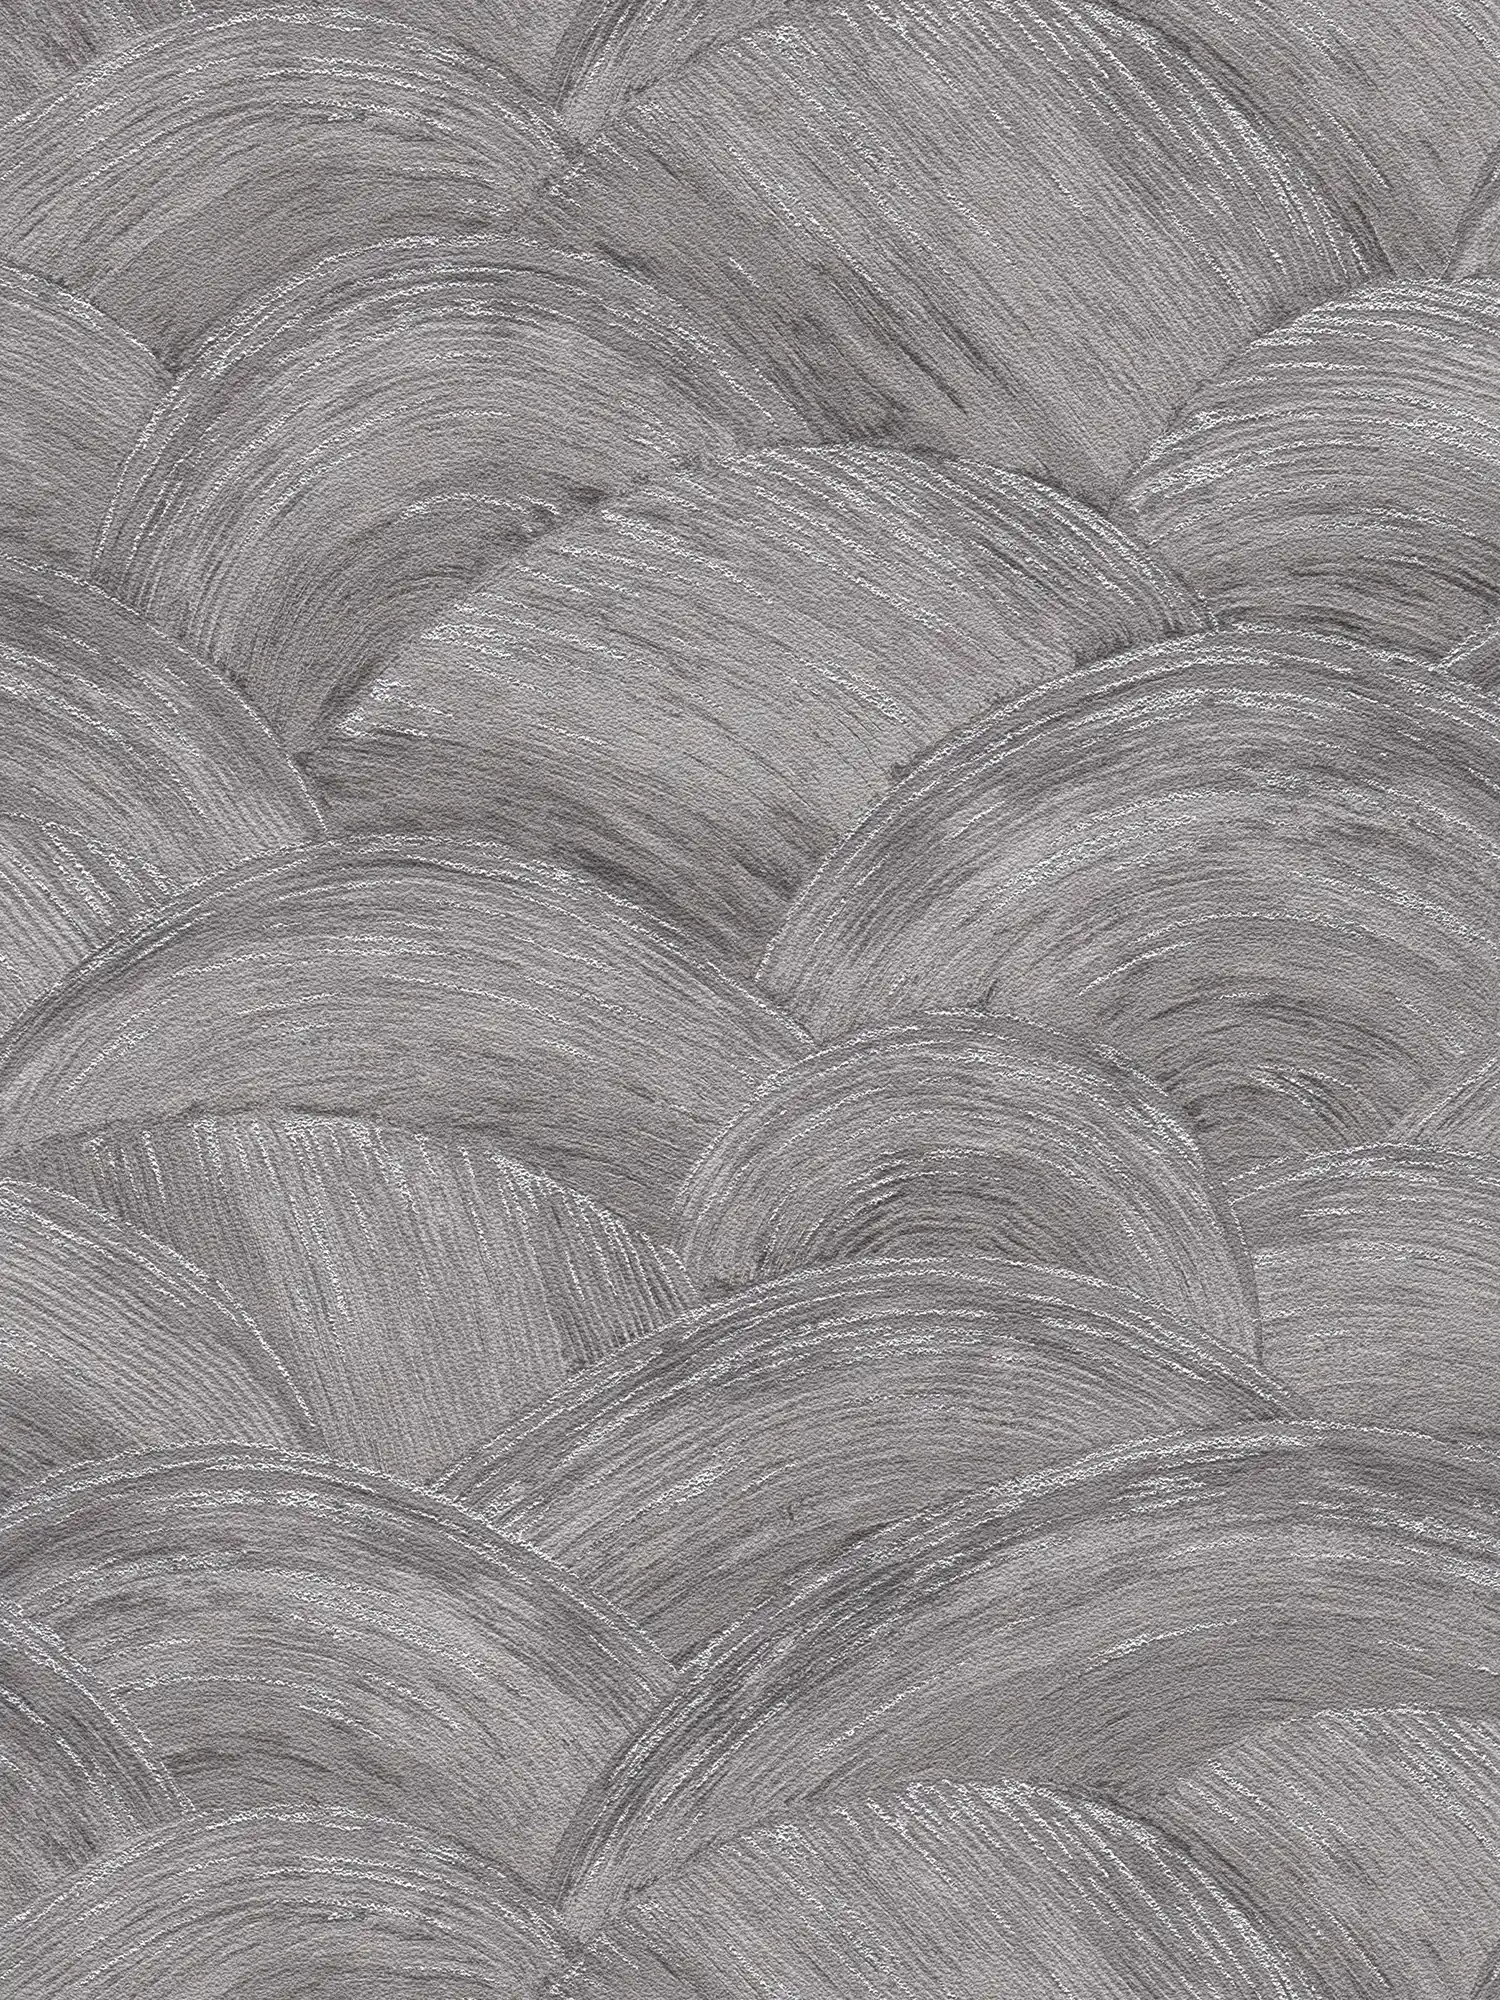             Carta da parati in tessuto non tessuto con aspetto ondulato e effetto lucido - grigio, argento
        